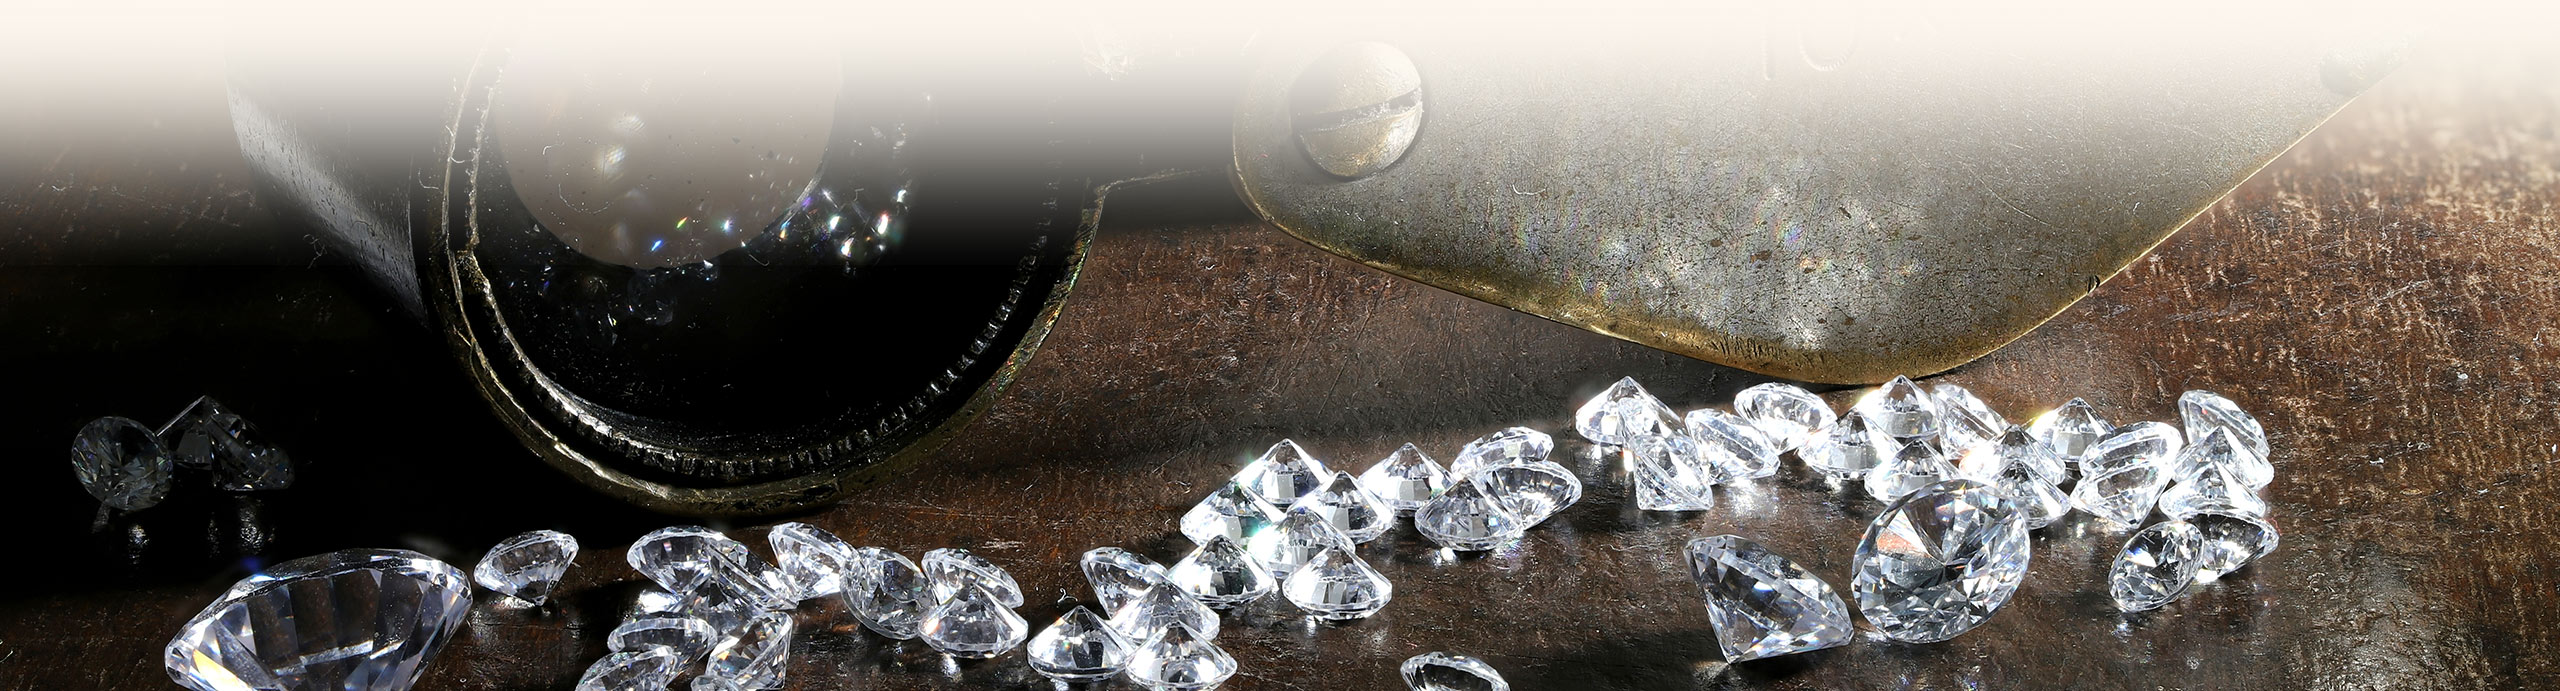 Diamanten werden analysiert, man sieht verschiedene Qualitätsstufen